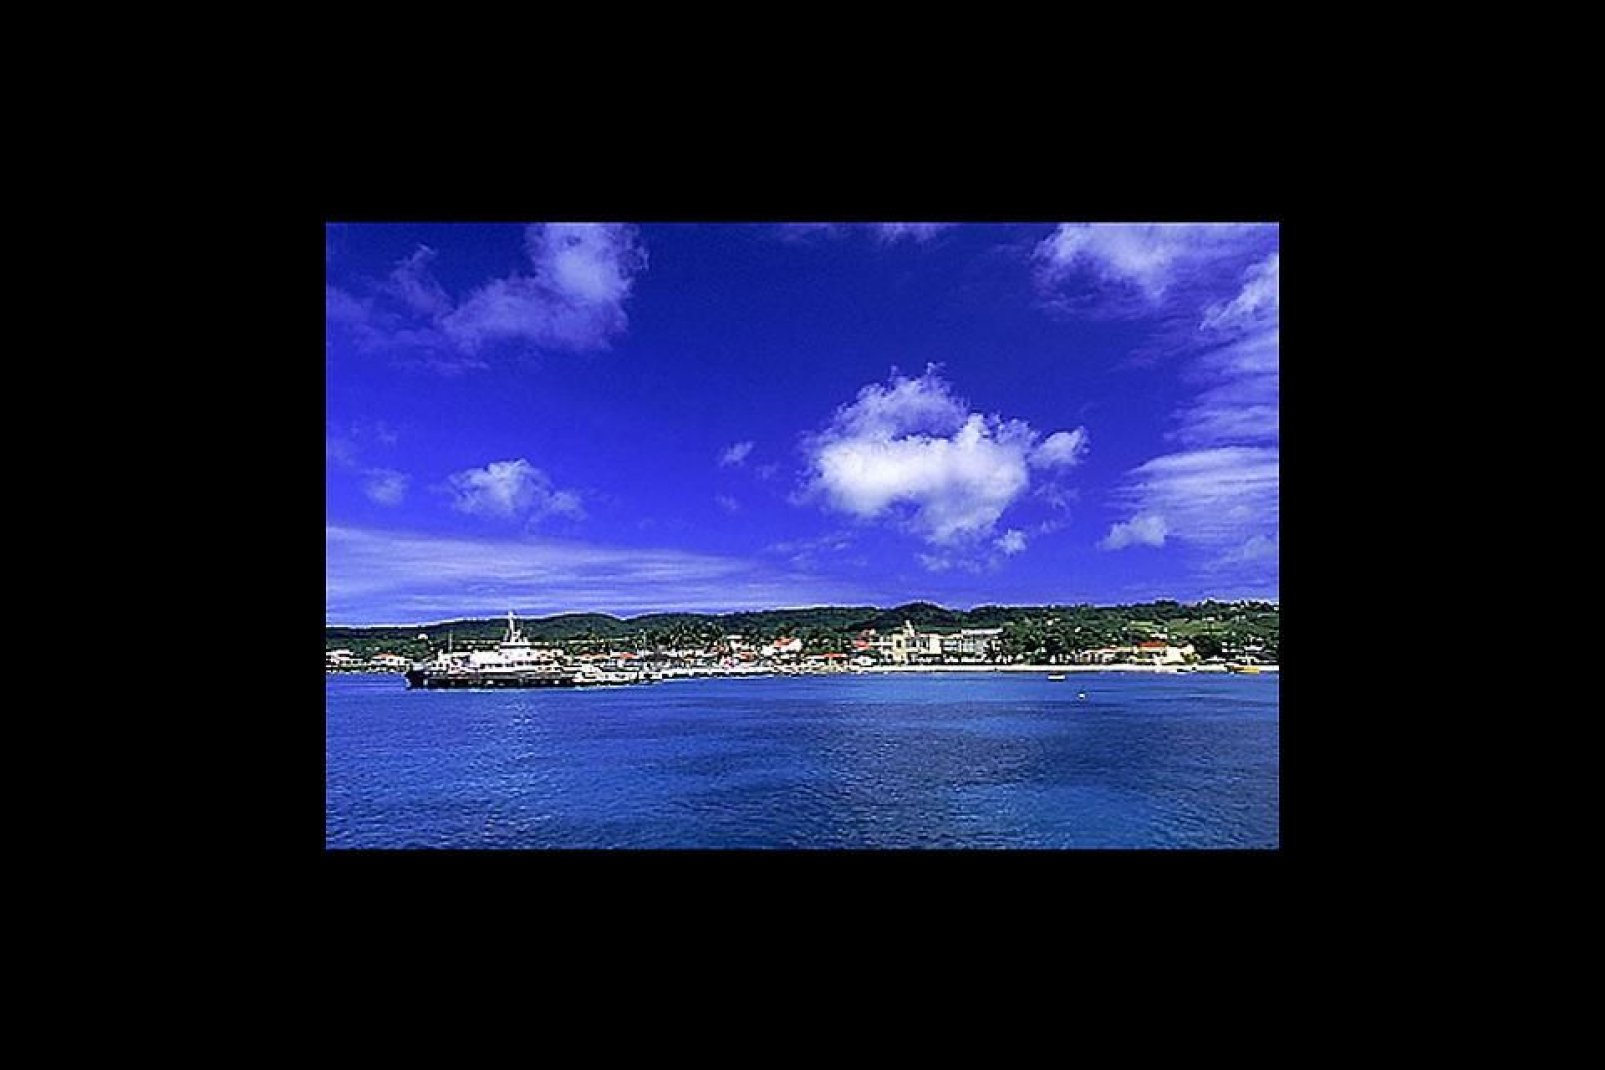 Grand-Bourg, situata nella parte sud-occidentale dell'isola, appartiene al Dipartimento della Guadalupa. Il suo porto è il più grande dell'isola.